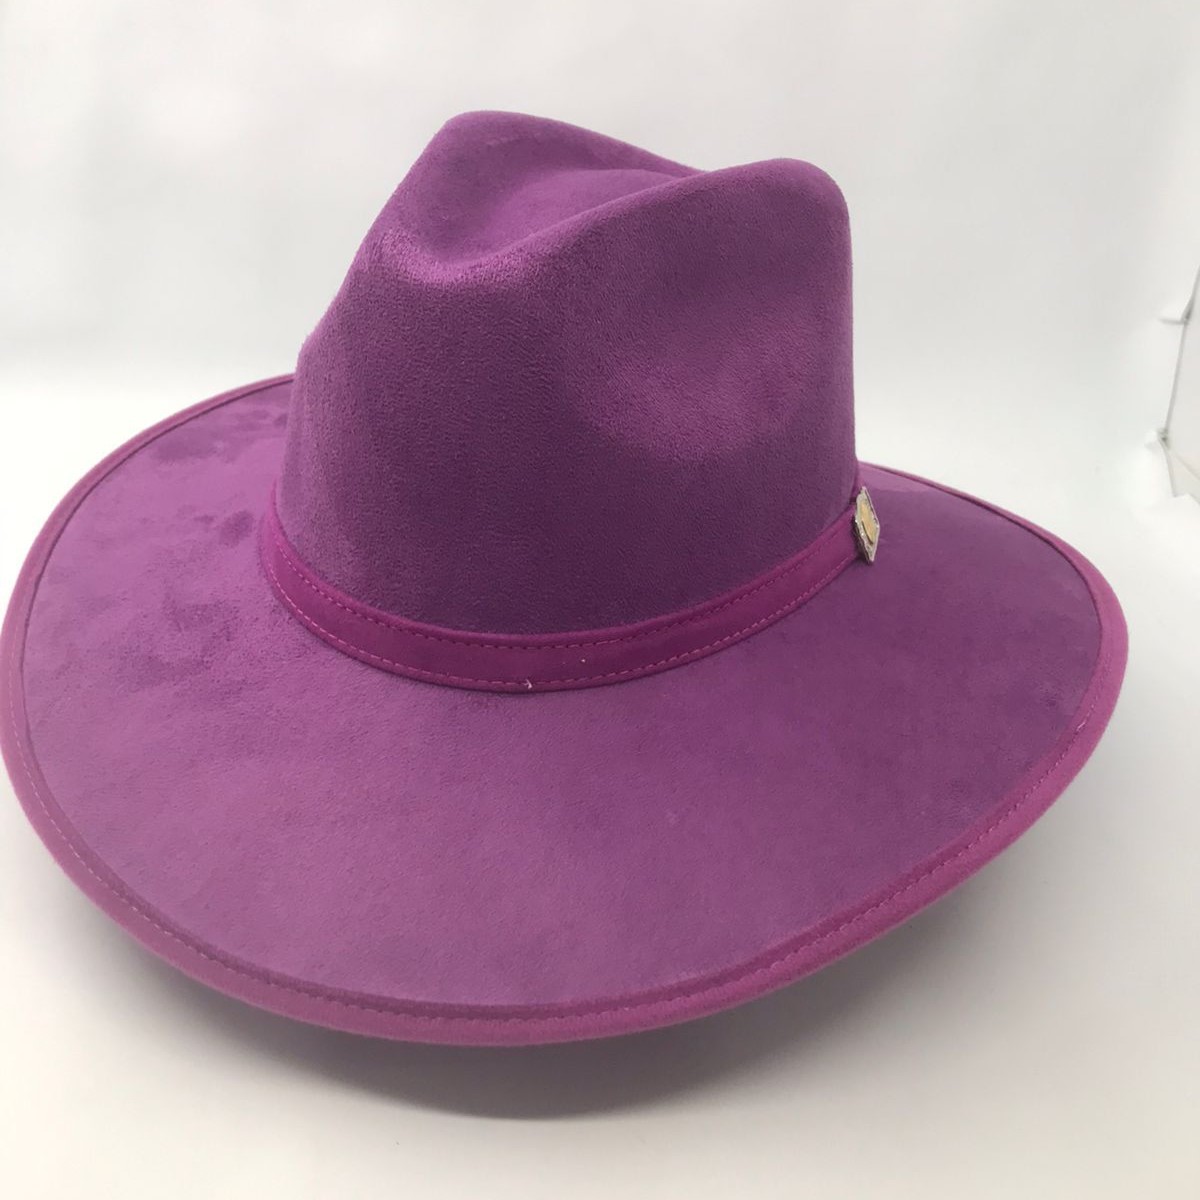 Sombrero gamuza horma Indiana color púrpura 0155 Laredo Hats Dama Laredo Hats